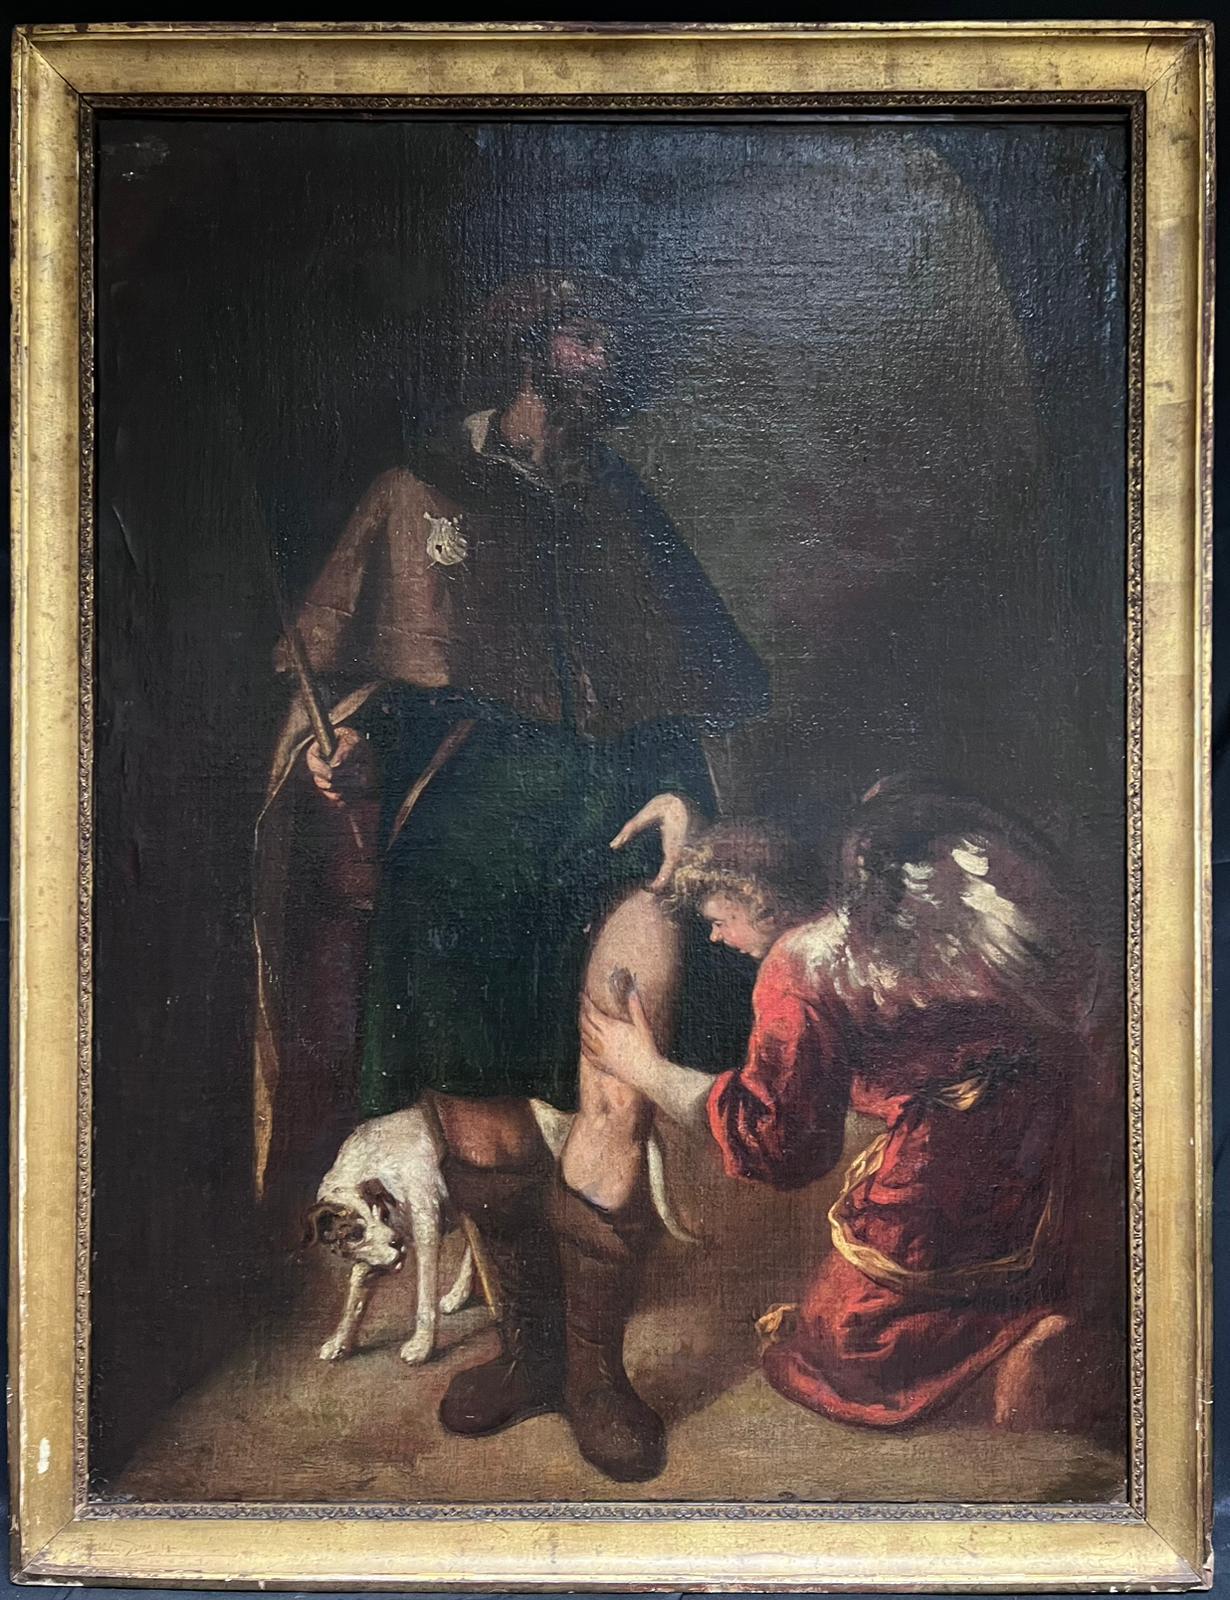 Grande peinture à l'huile espagnole du 17ème siècle représentant un pèlerin blessé et un ange